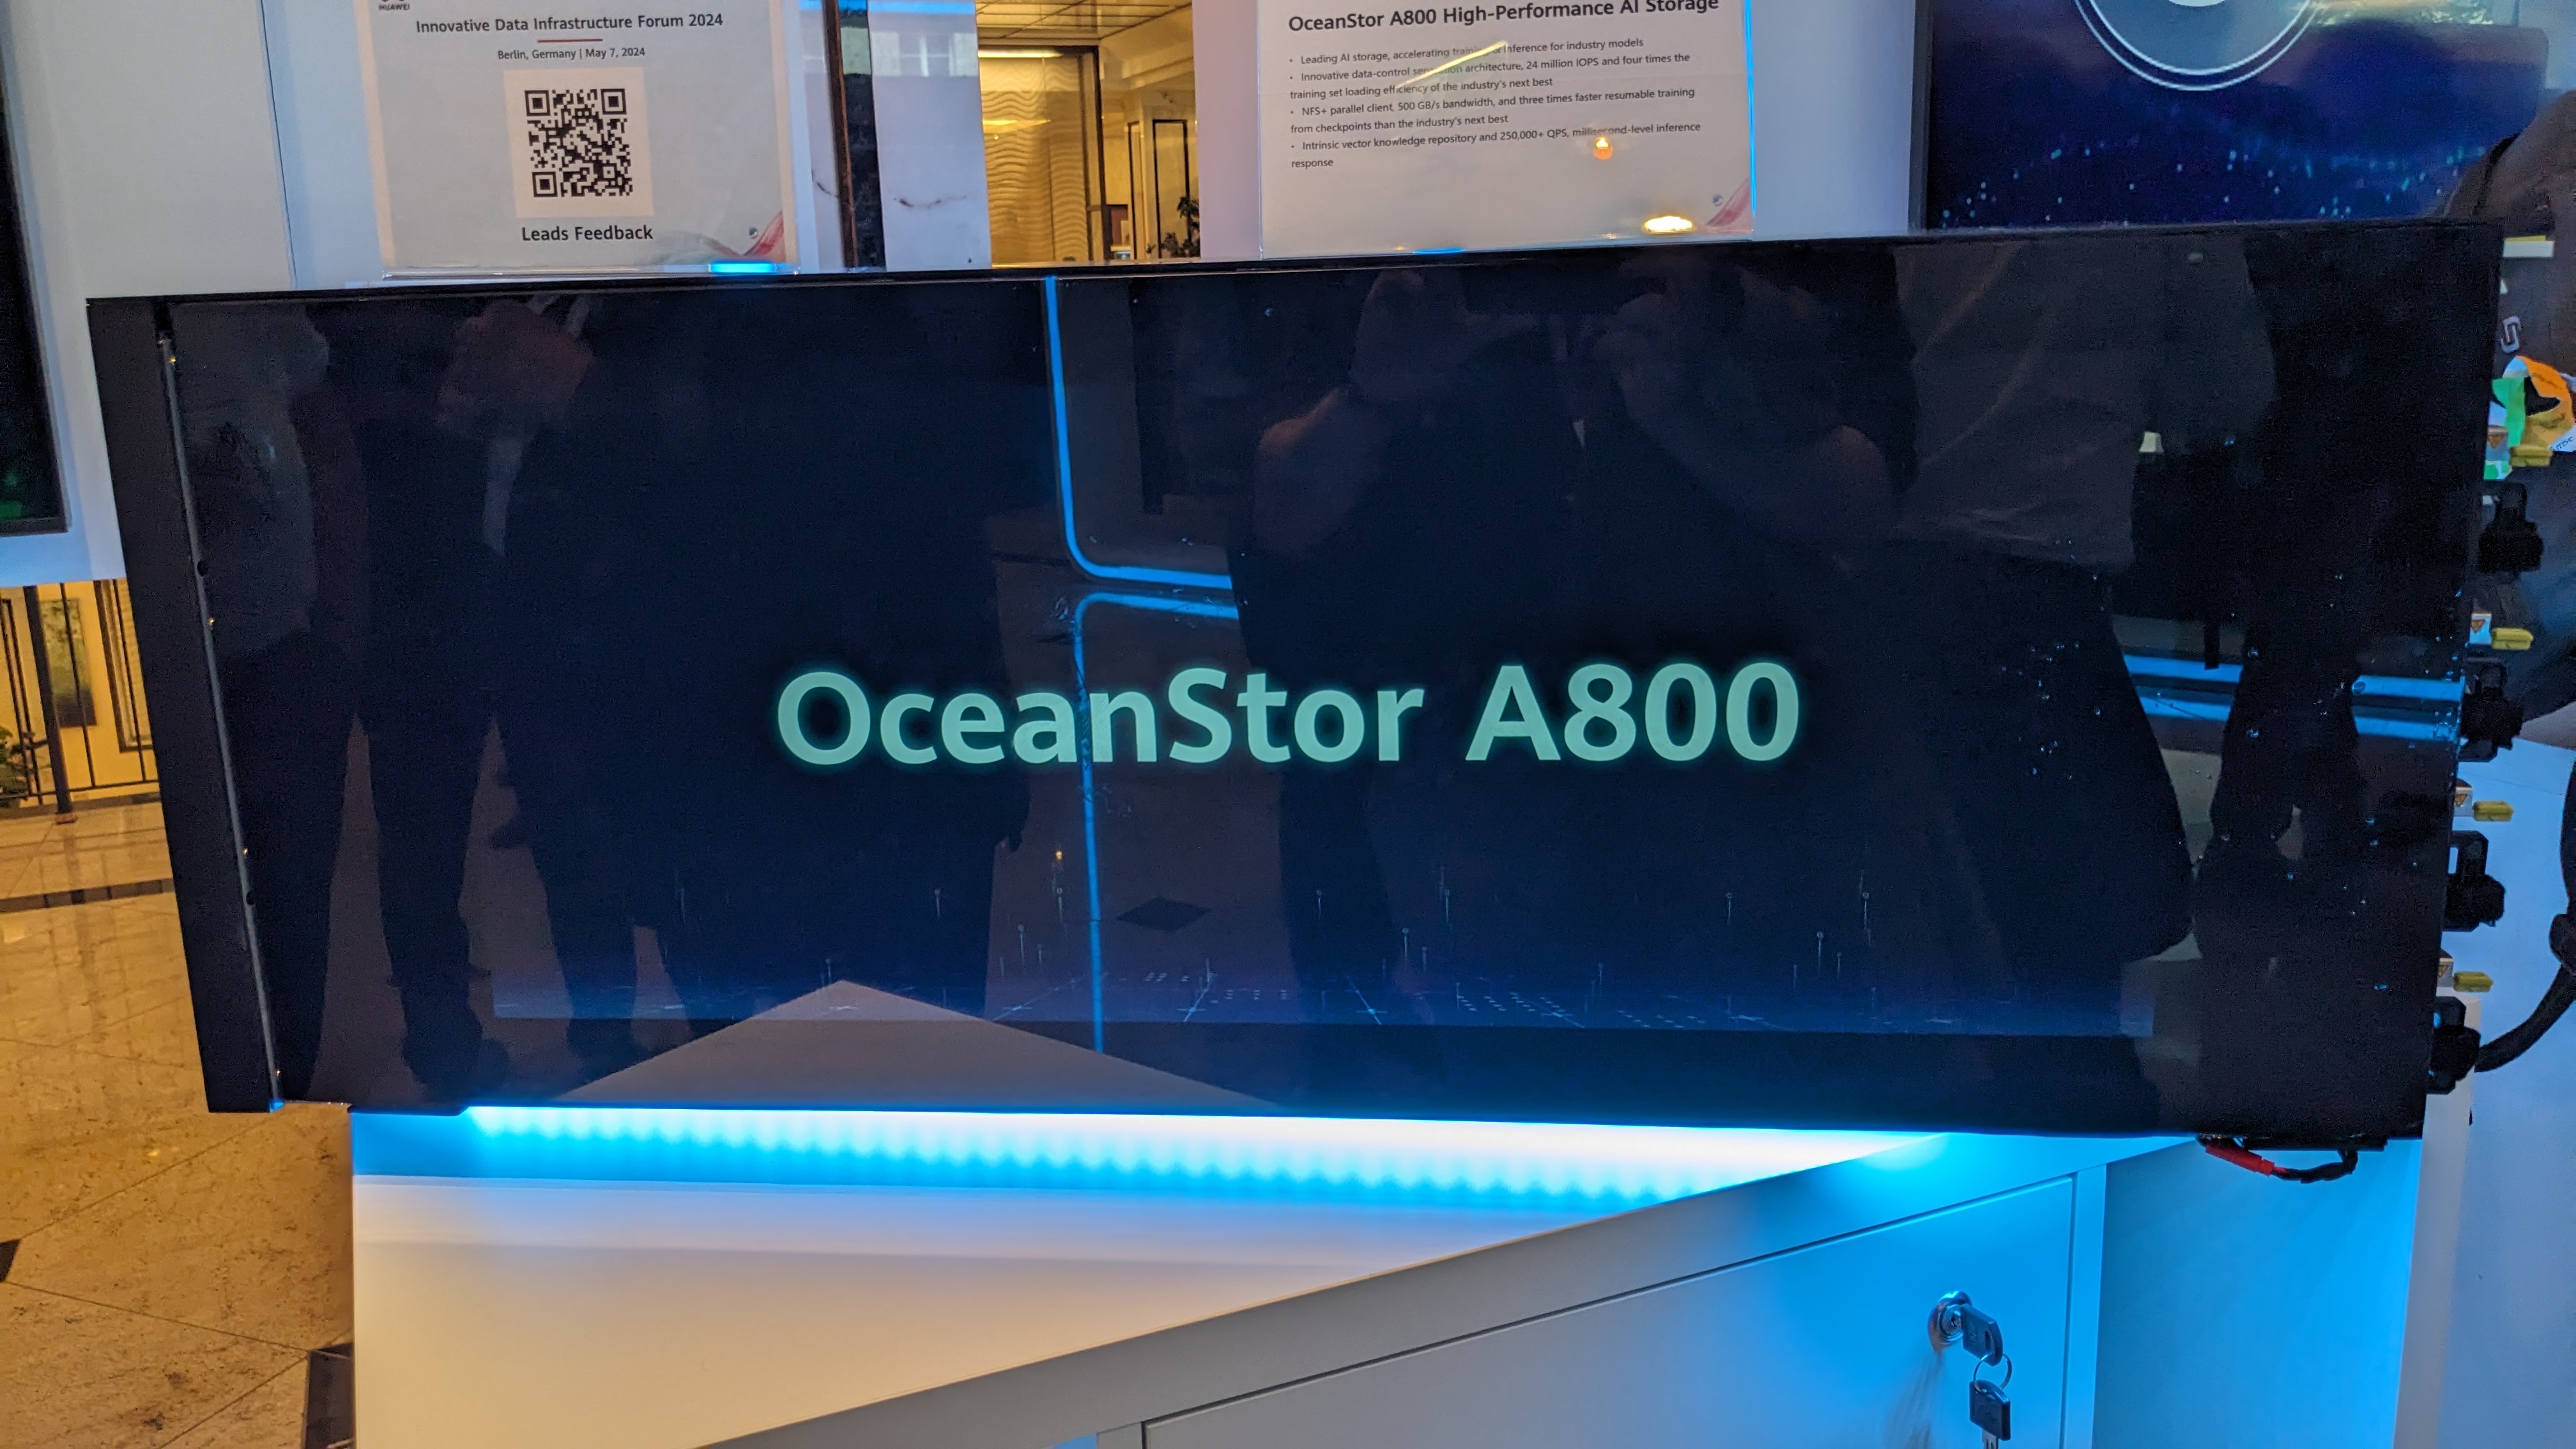 Le NAS OceanStor A800 de Huawei exposé à l'IDI 2024